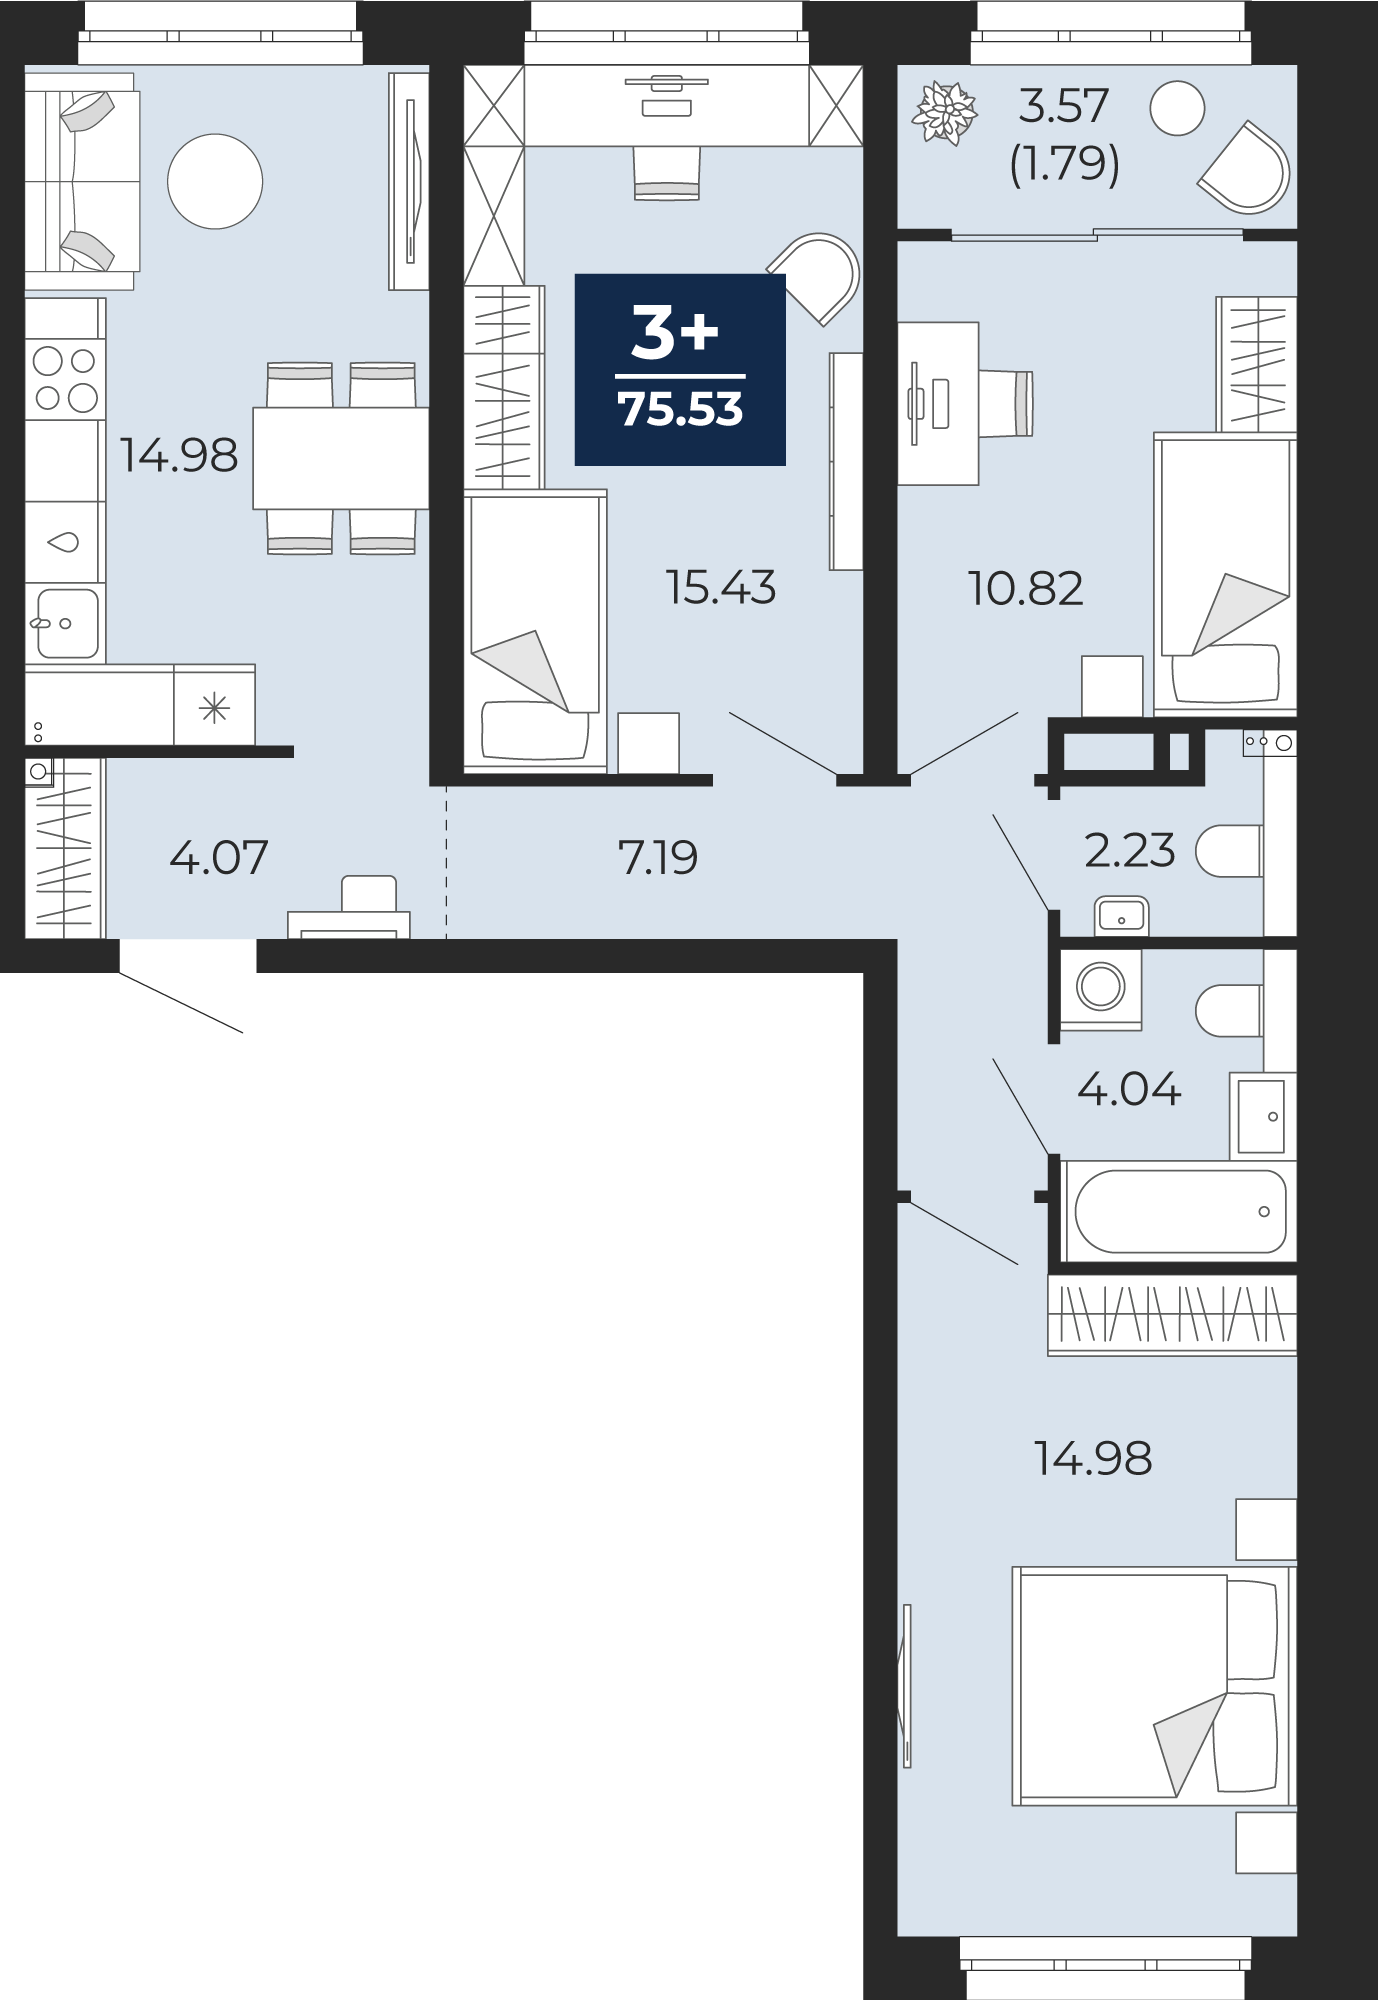 Квартира № 18, 3-комнатная, 75.53 кв. м, 5 этаж